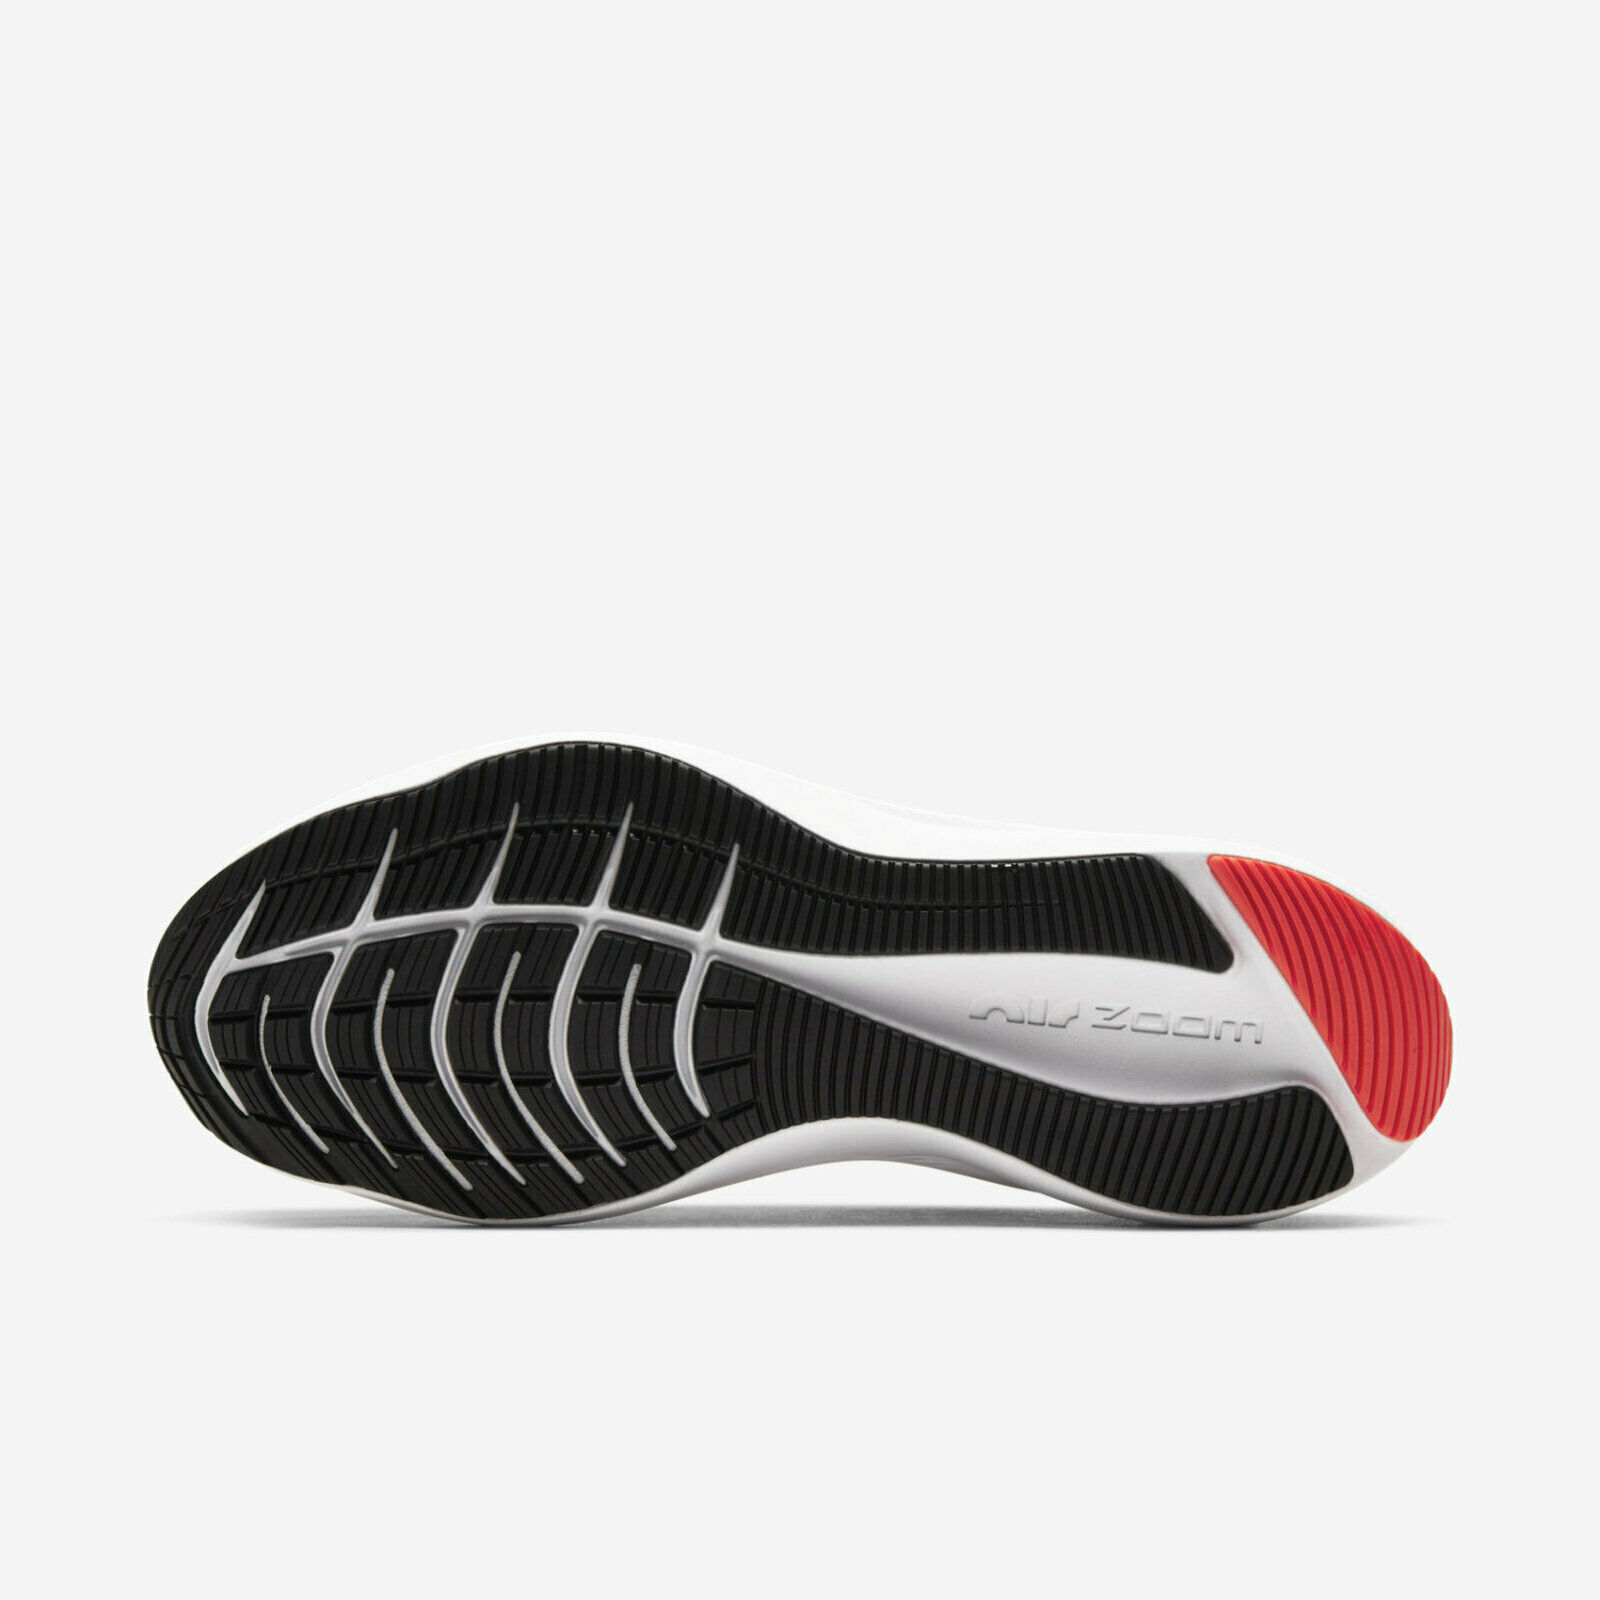 ลองดูภาพสินค้า รองเท้าวิ่ง Winflo 7 “มี8สีให้เลือก" พร้อมกล่อง FULL SET (เบอร์36-45) *จัดส่งฟรี ส่งเร็วมาก เก็บเงินปลายทาง* รองเท้าวิ่งชาย รองเท้าวิ่งหญิง